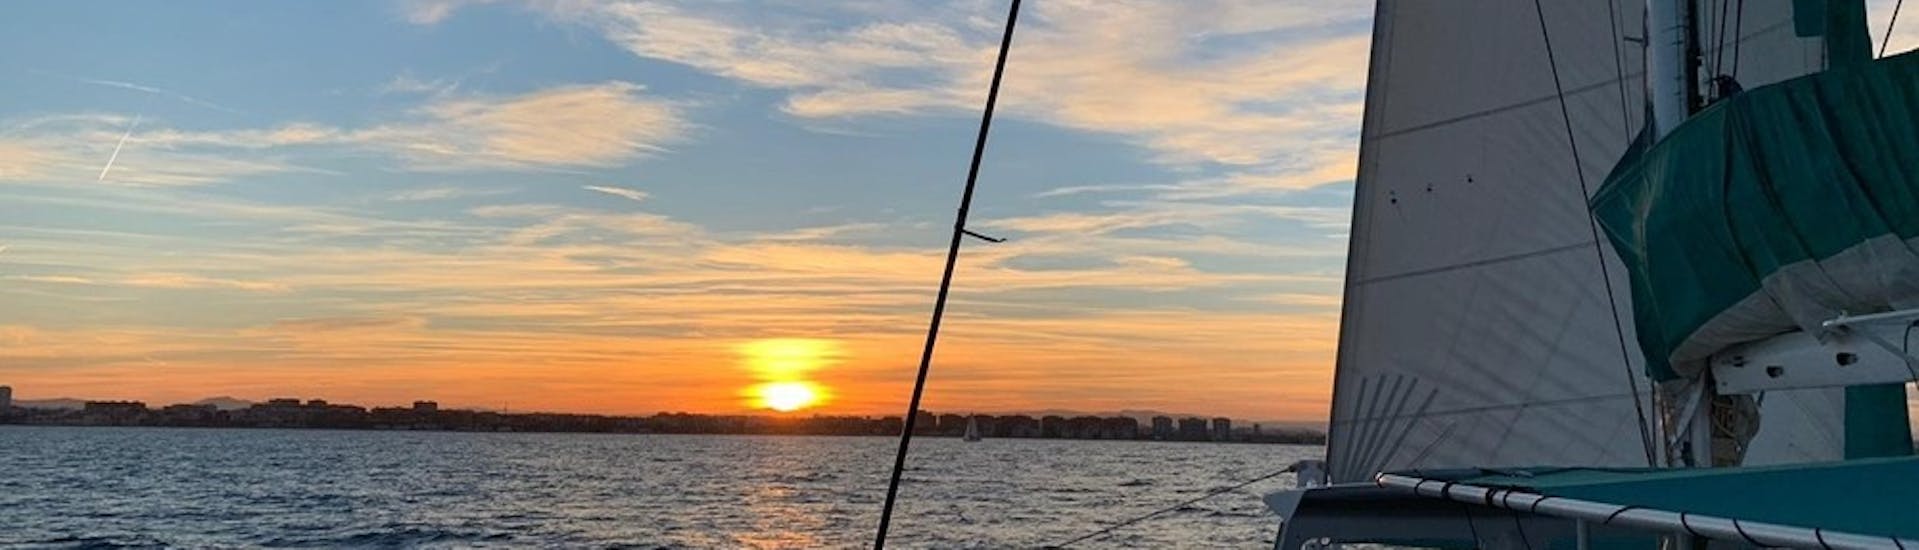 Vues du coucher de soleil sur la mer Méditerranée lors d'une balade en catamaran à Valence avec Mundo Marino.